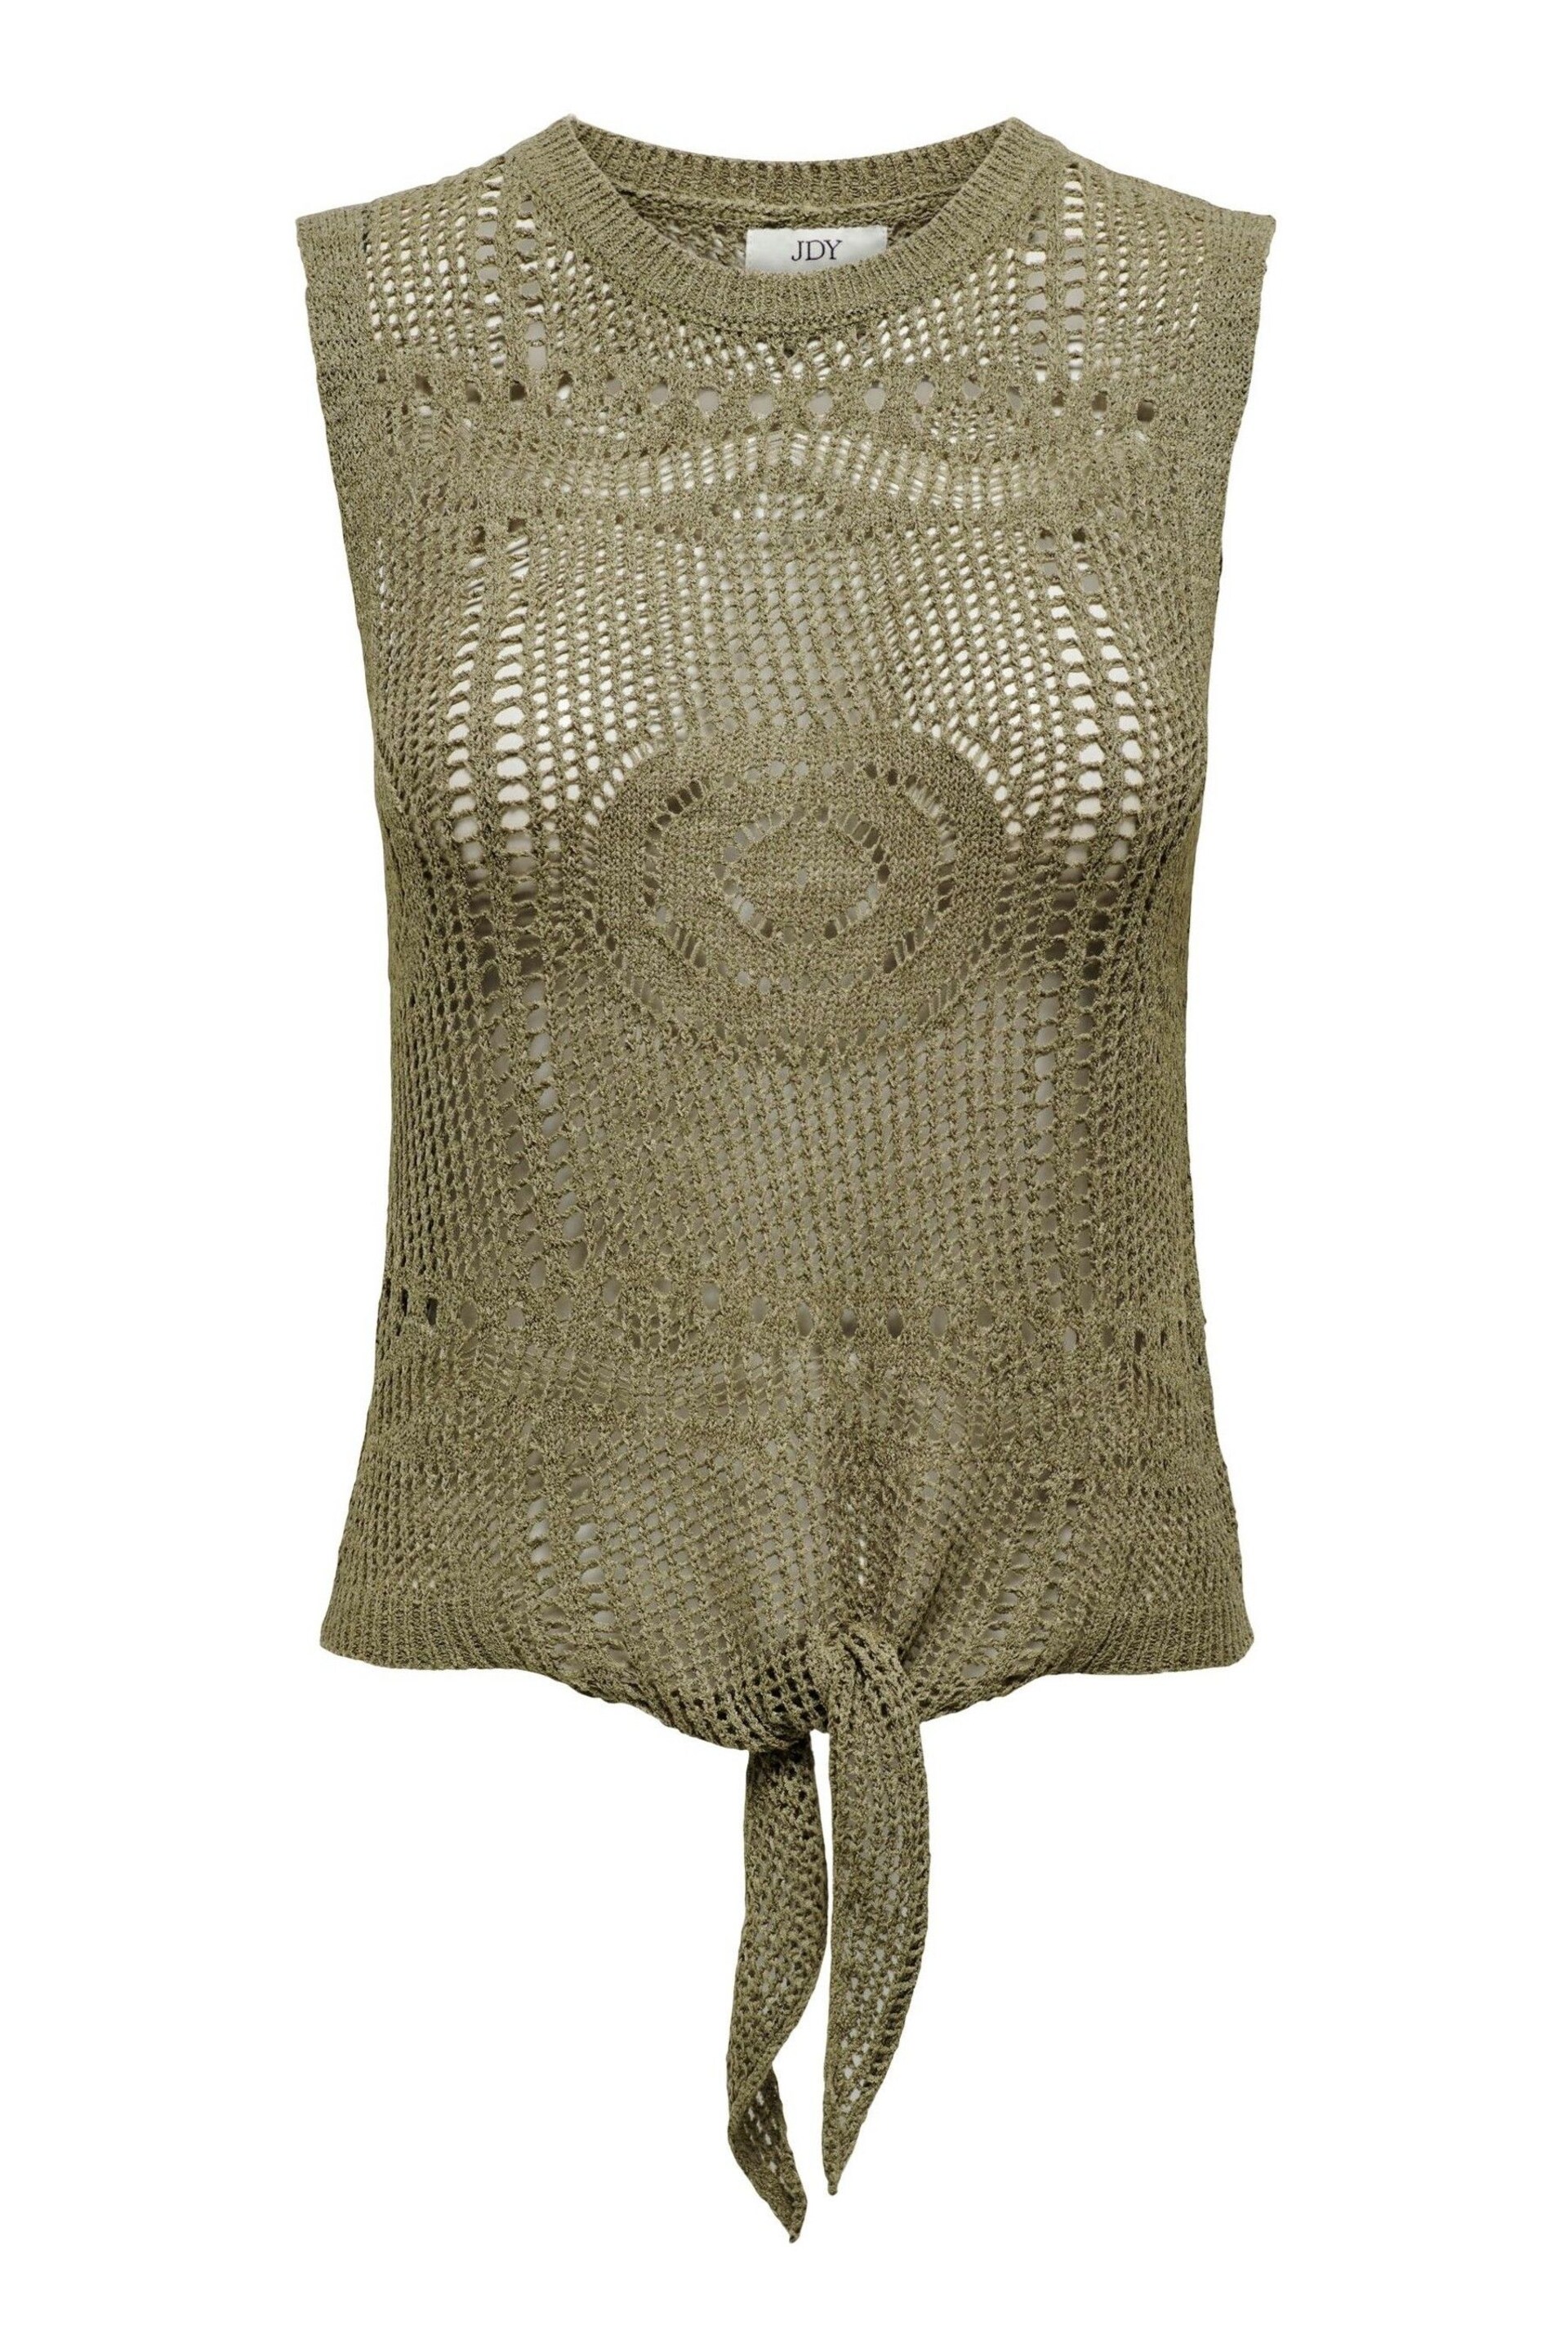 JDY Green Crochet Sleeveless Tie Front Top - Image 5 of 6